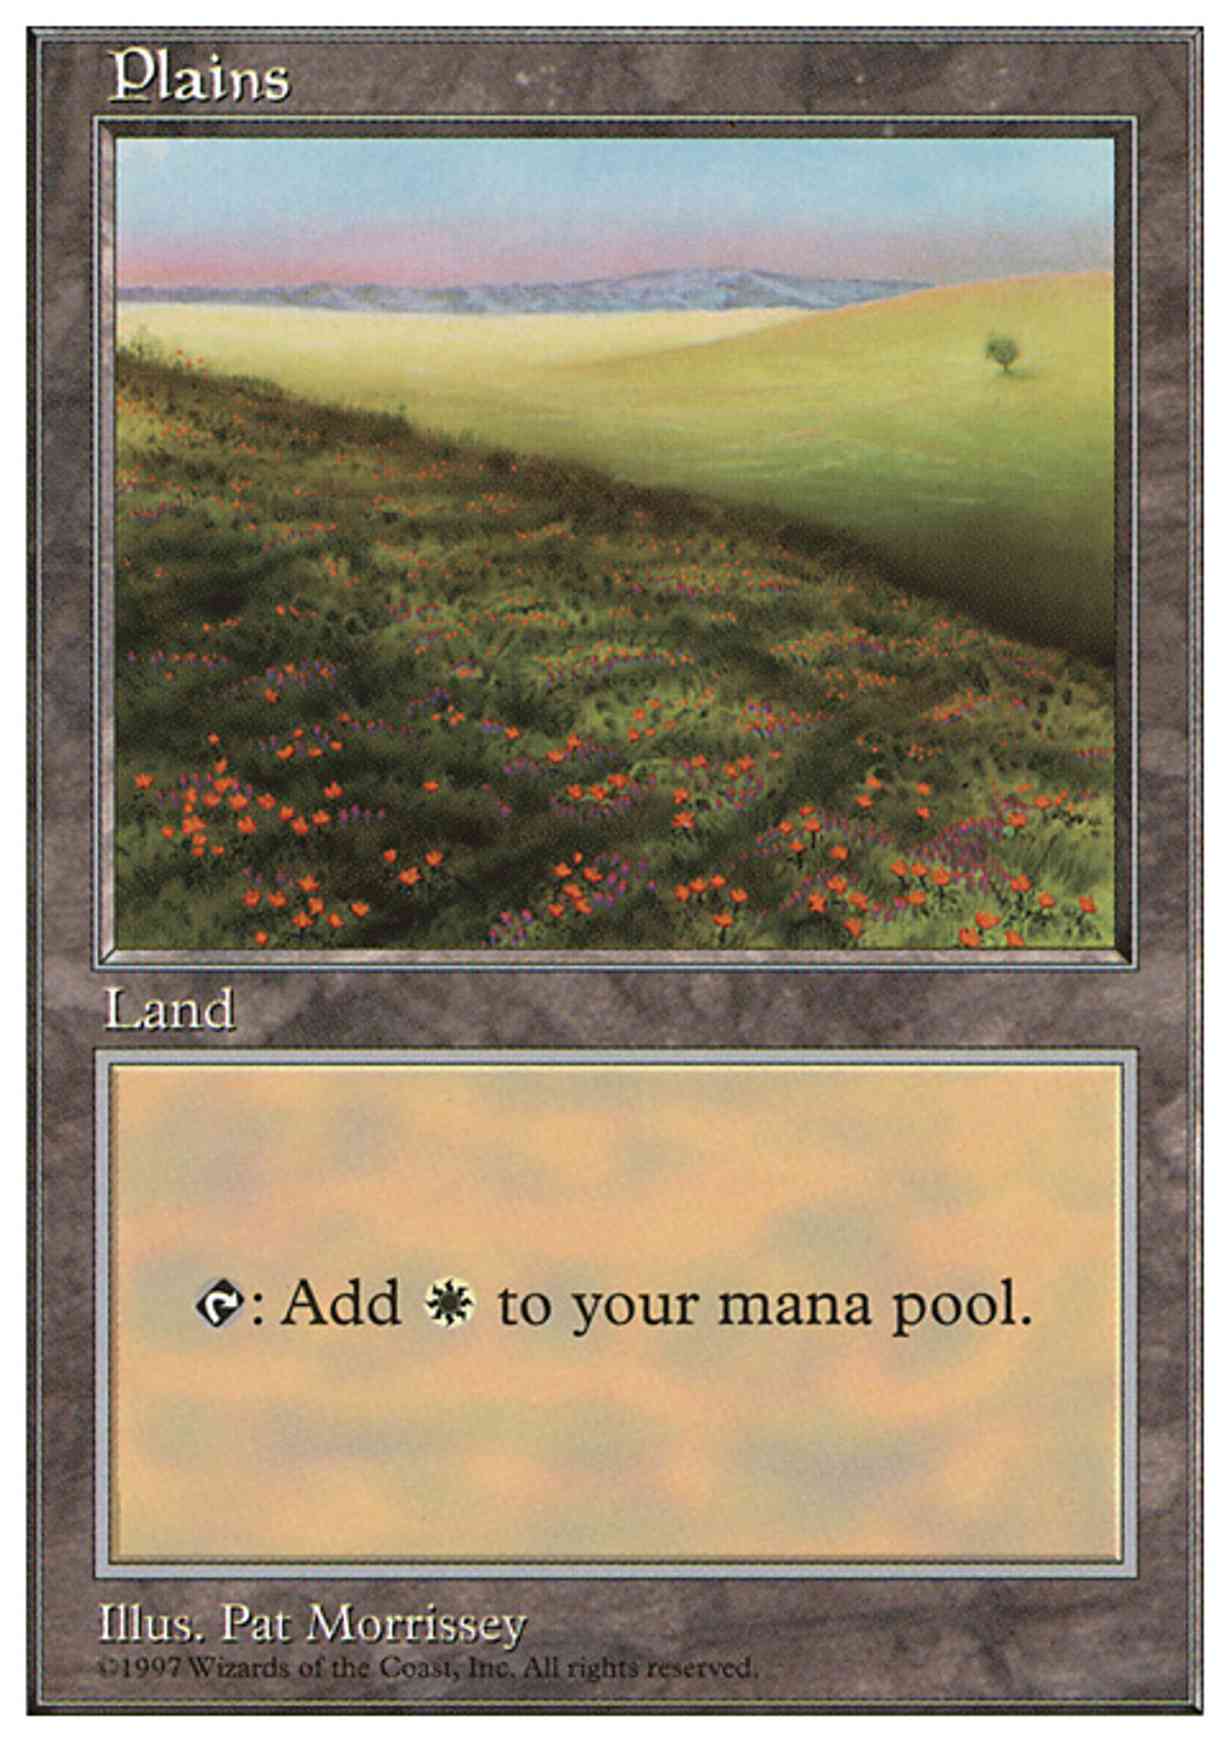 Plains (431) magic card front